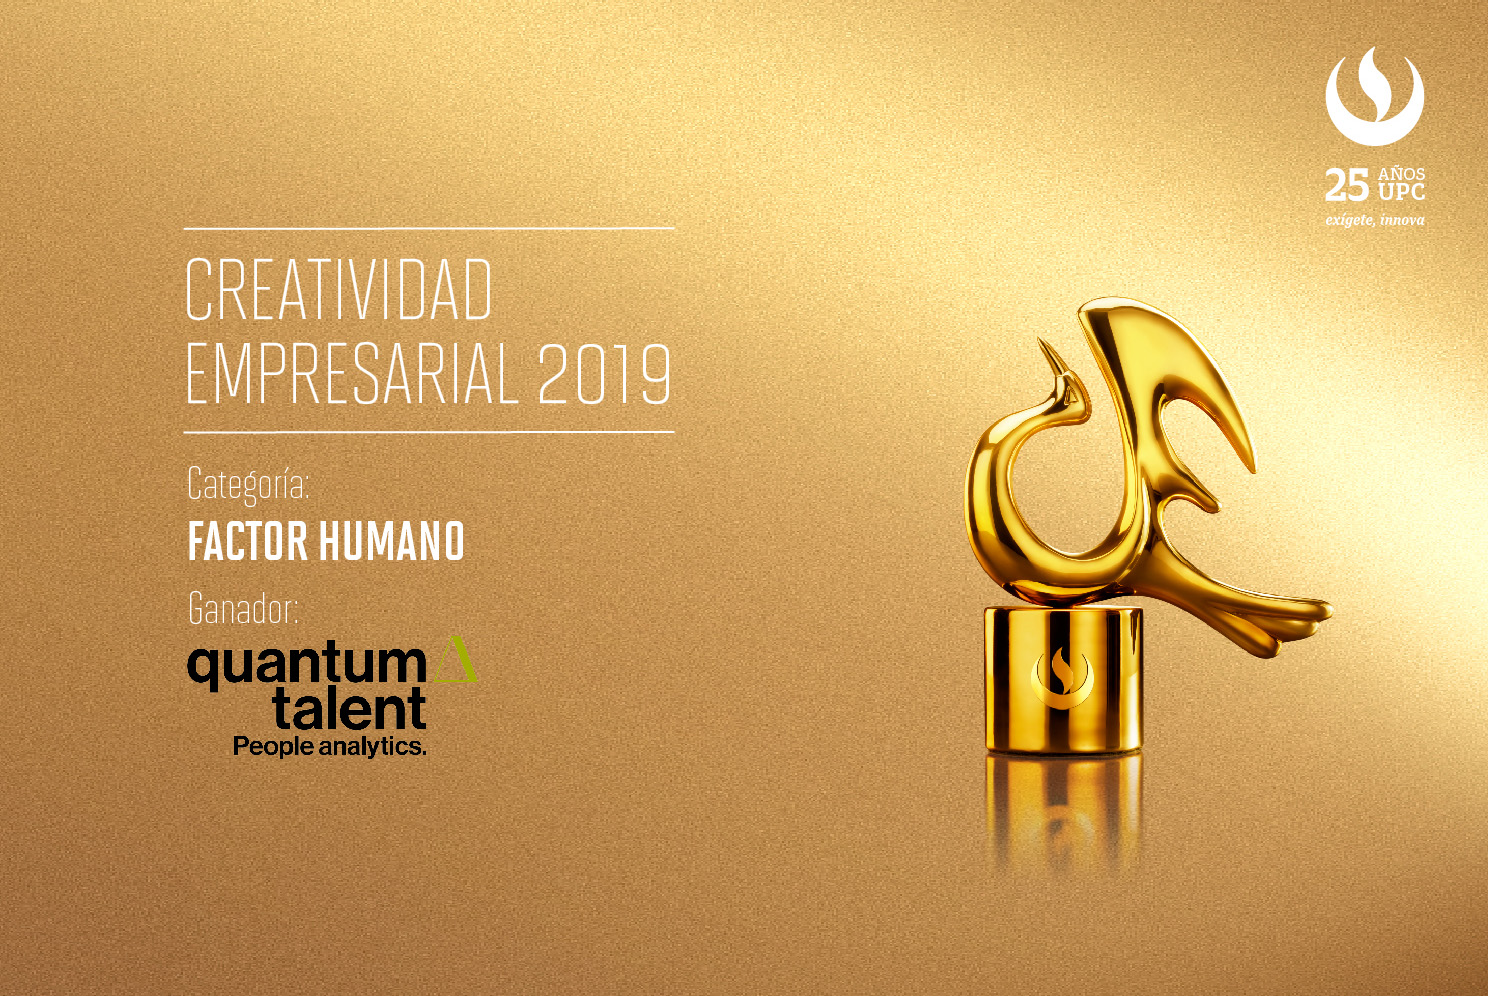 Creatividad Empresarial 2019: Quantum Talent fue premiada en la categoría Factor Humano